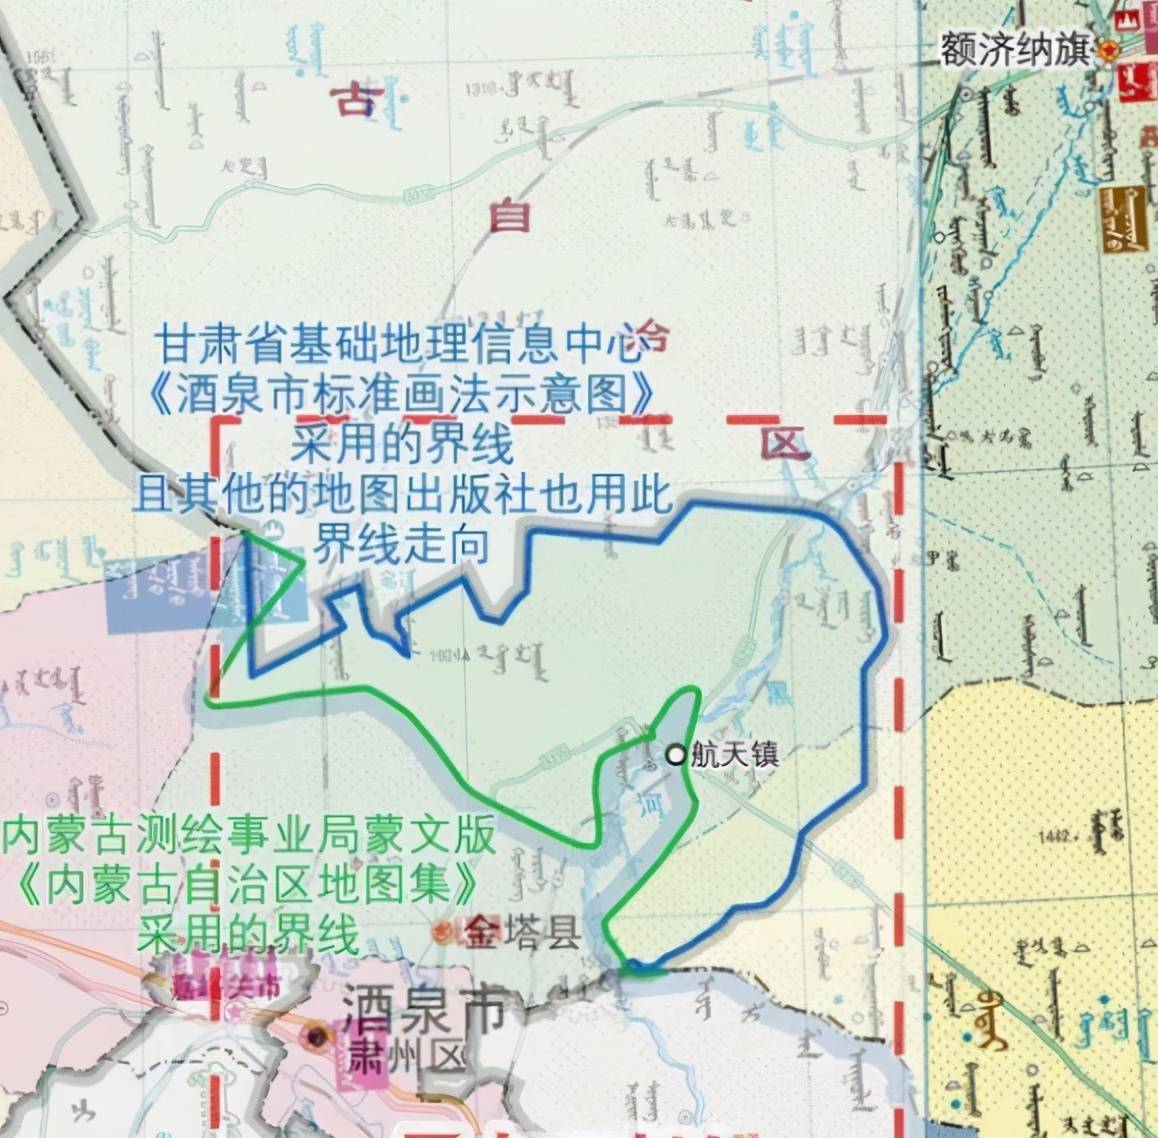 酒泉卫星发射中心到底在哪儿,甘肃,内蒙古都有话说